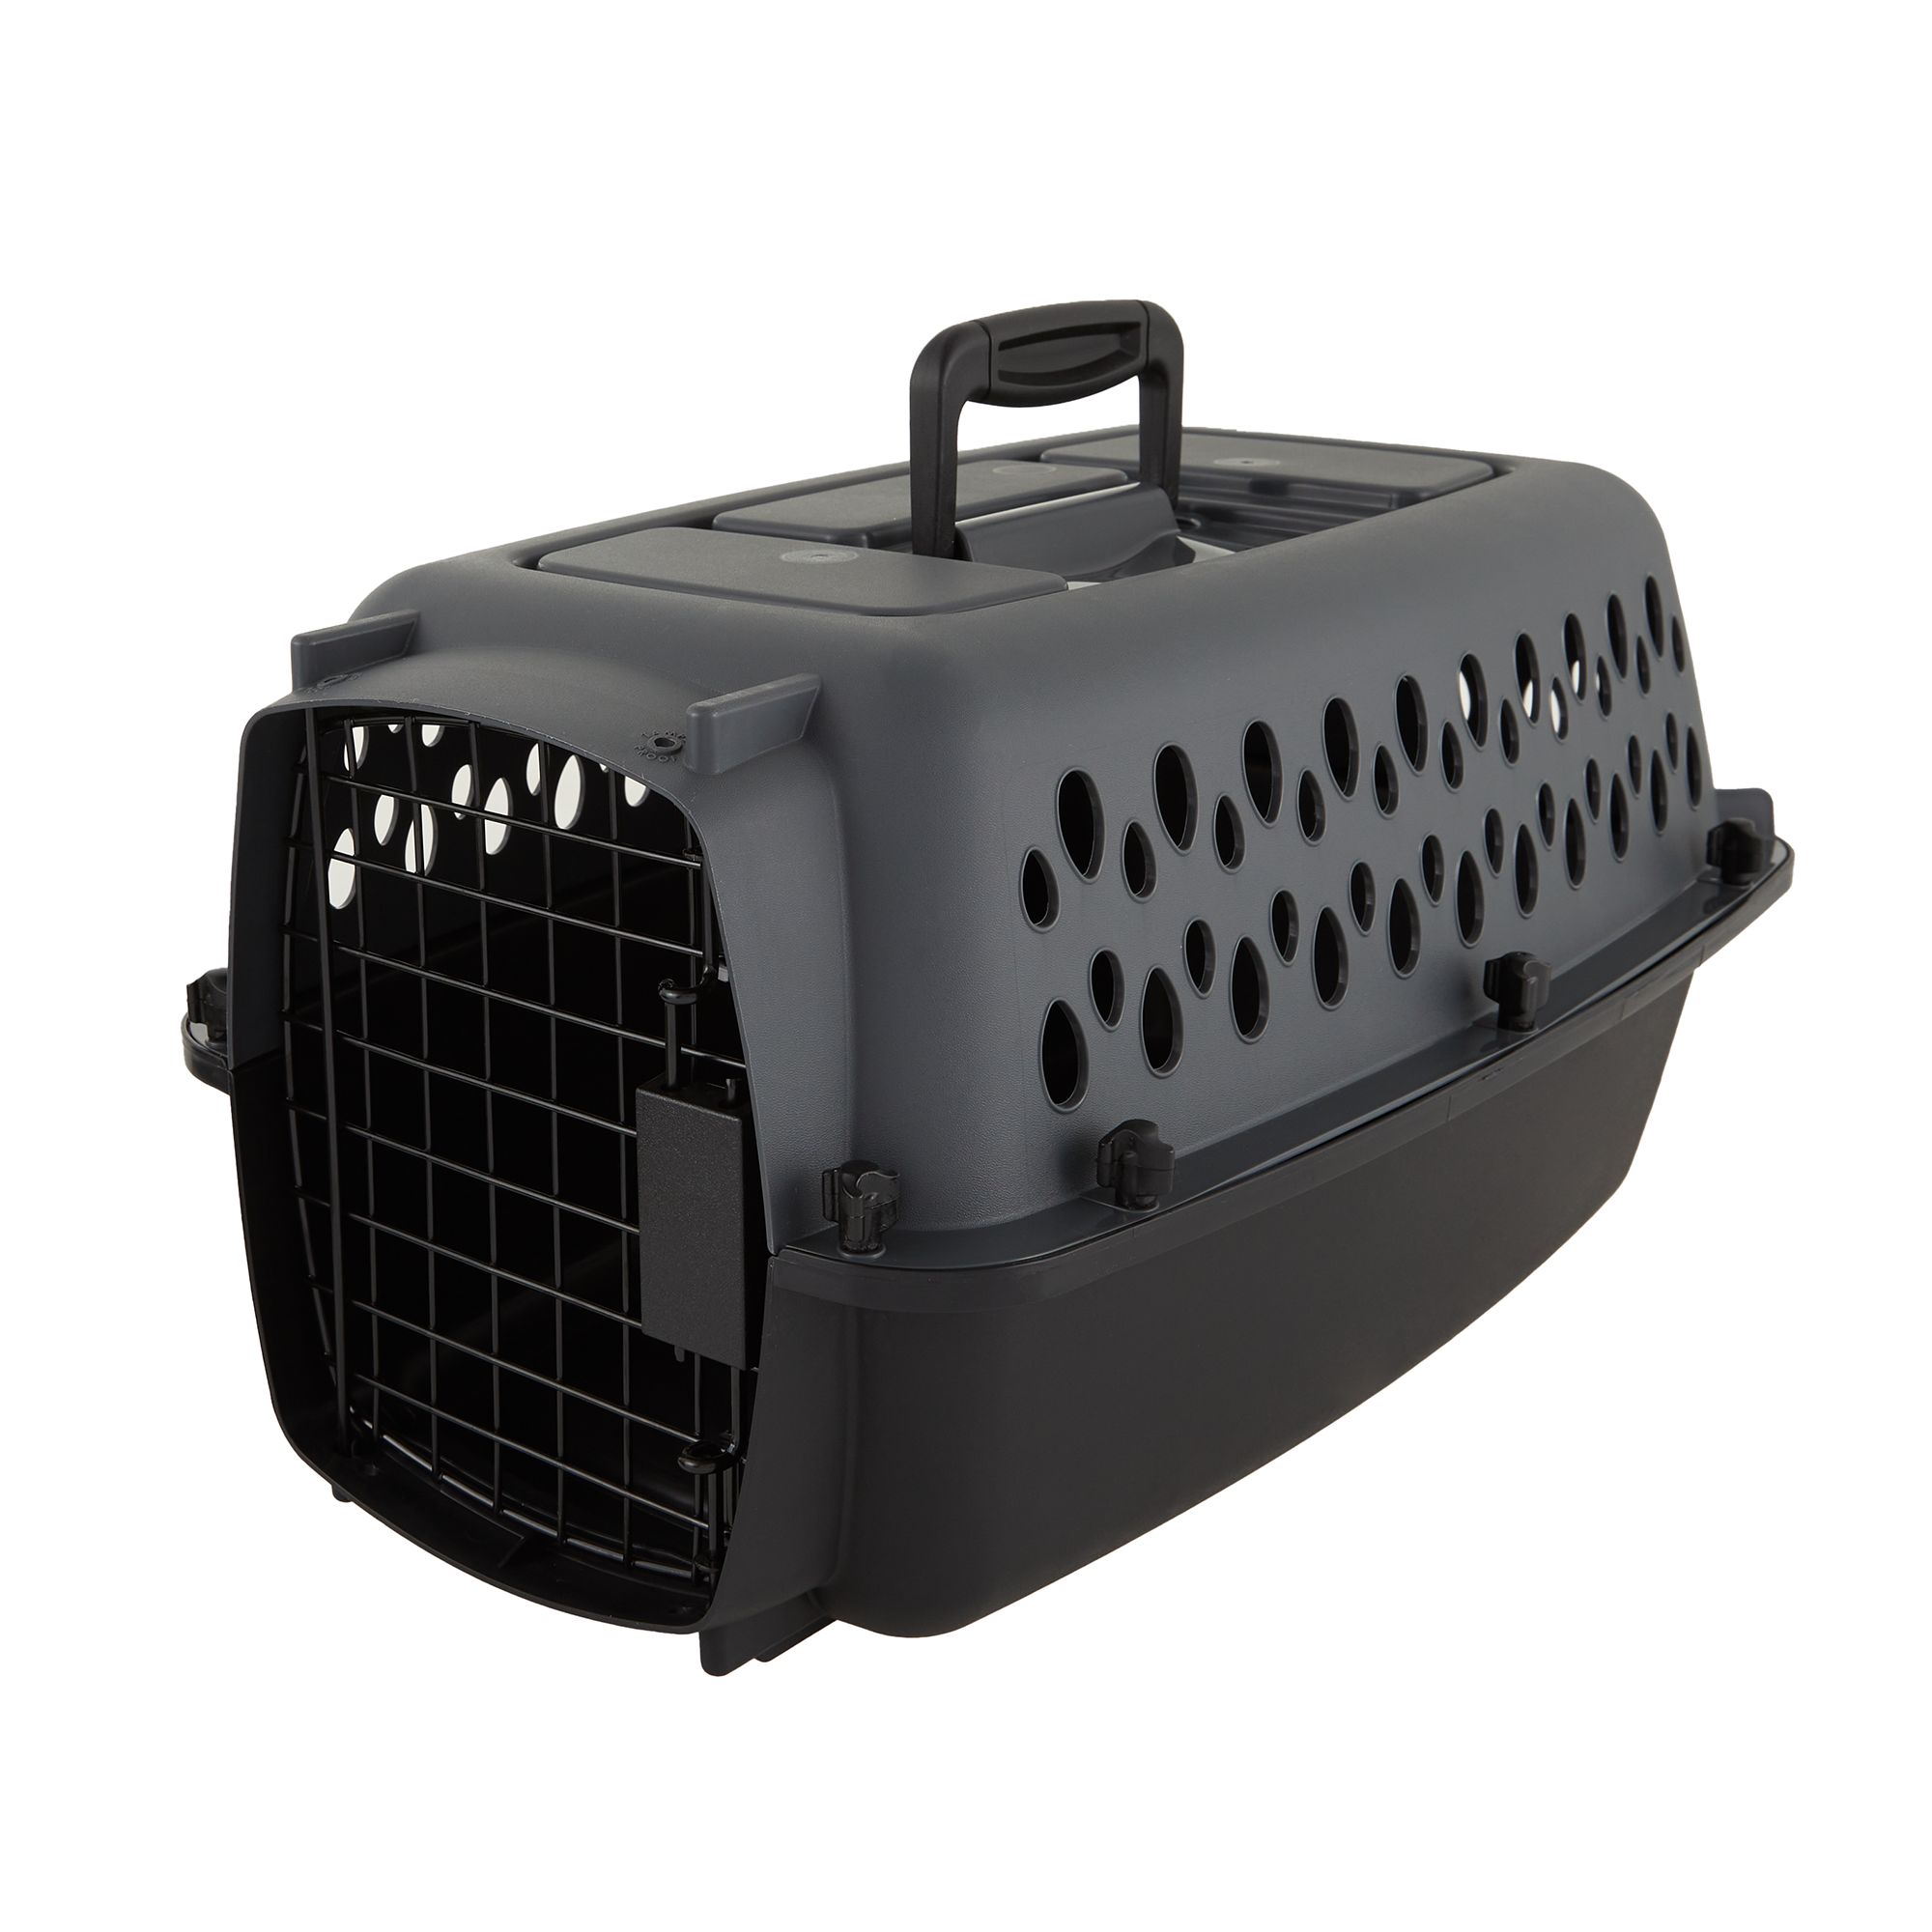 Whisker City Cat Carrier, Size: 19L x 12.6W 10H | PetSmart